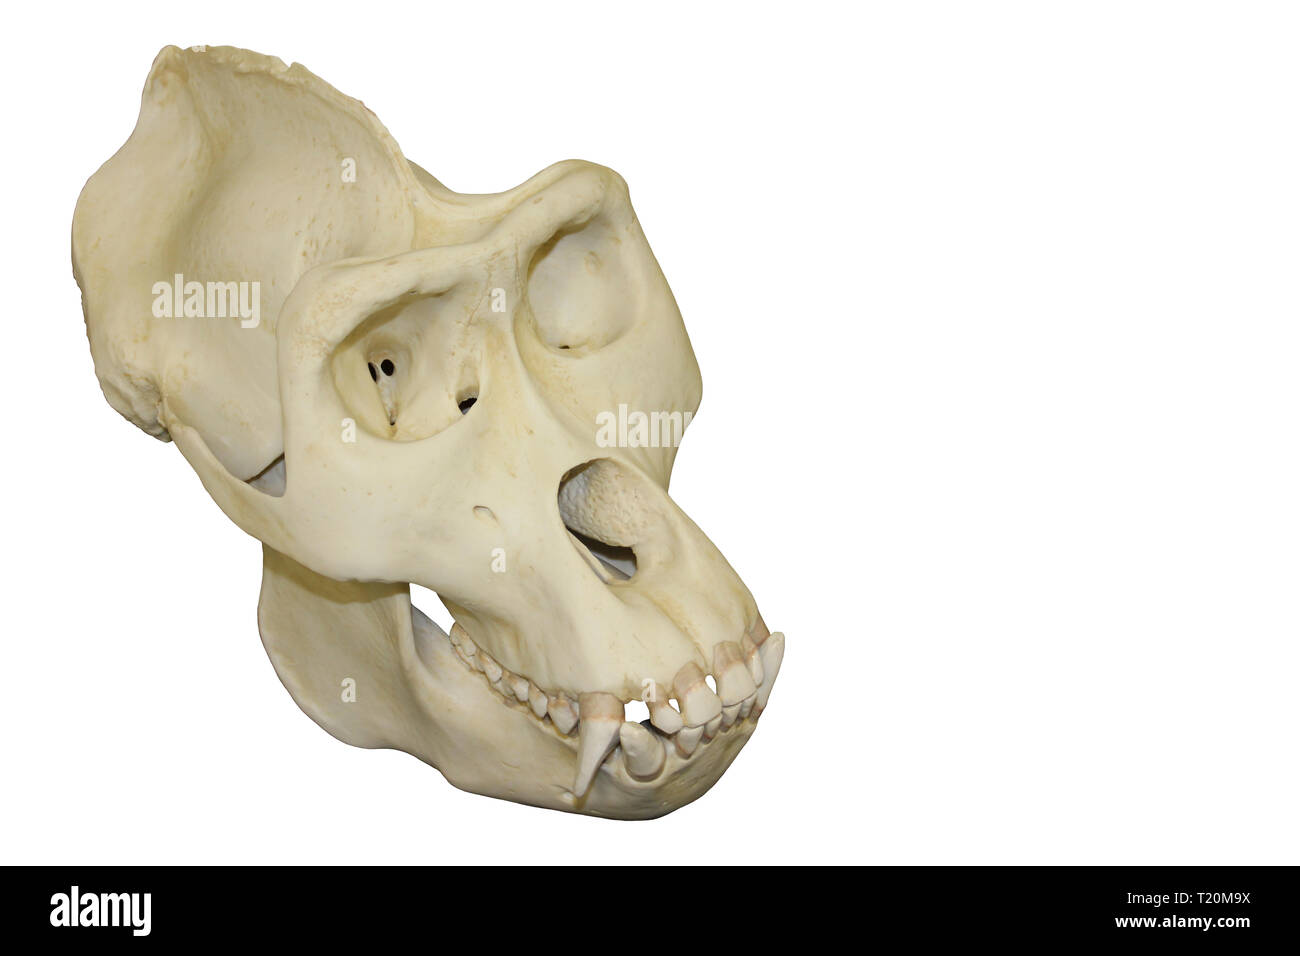 Crâne de gorille mâle Fond blanc Banque D'Images